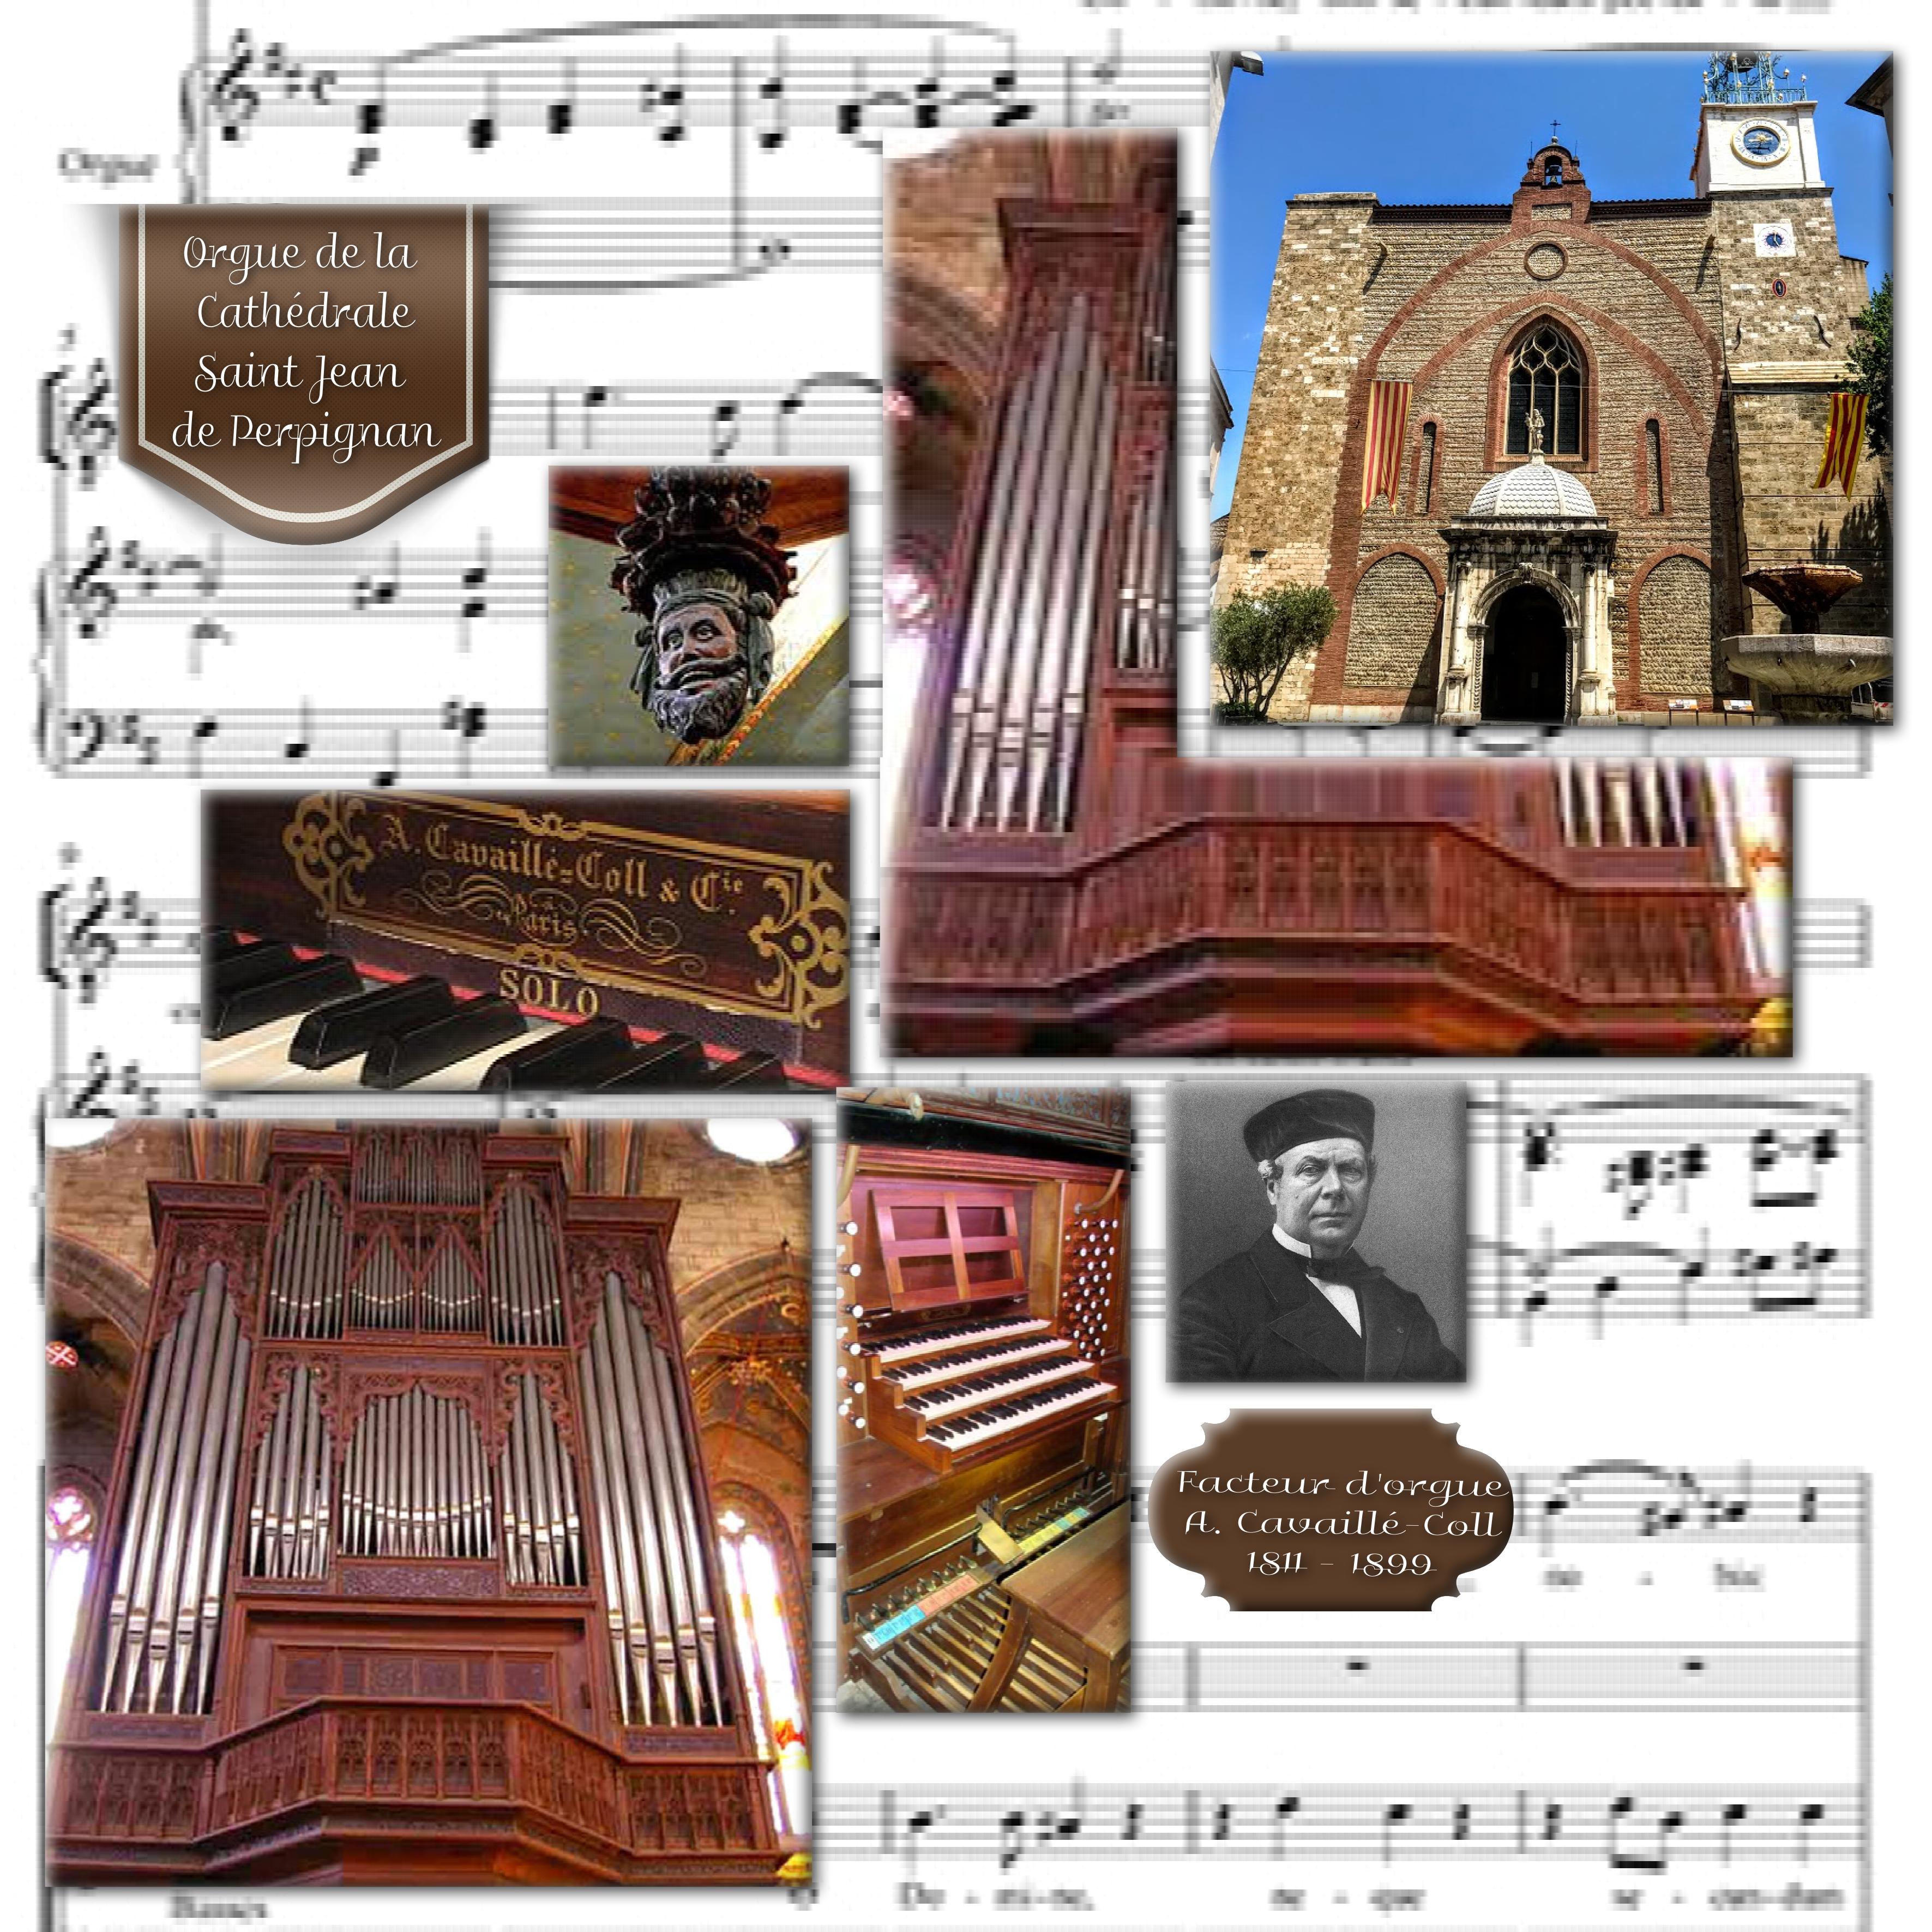 orgue Cathédrale de Perpignan Huguette.jpg